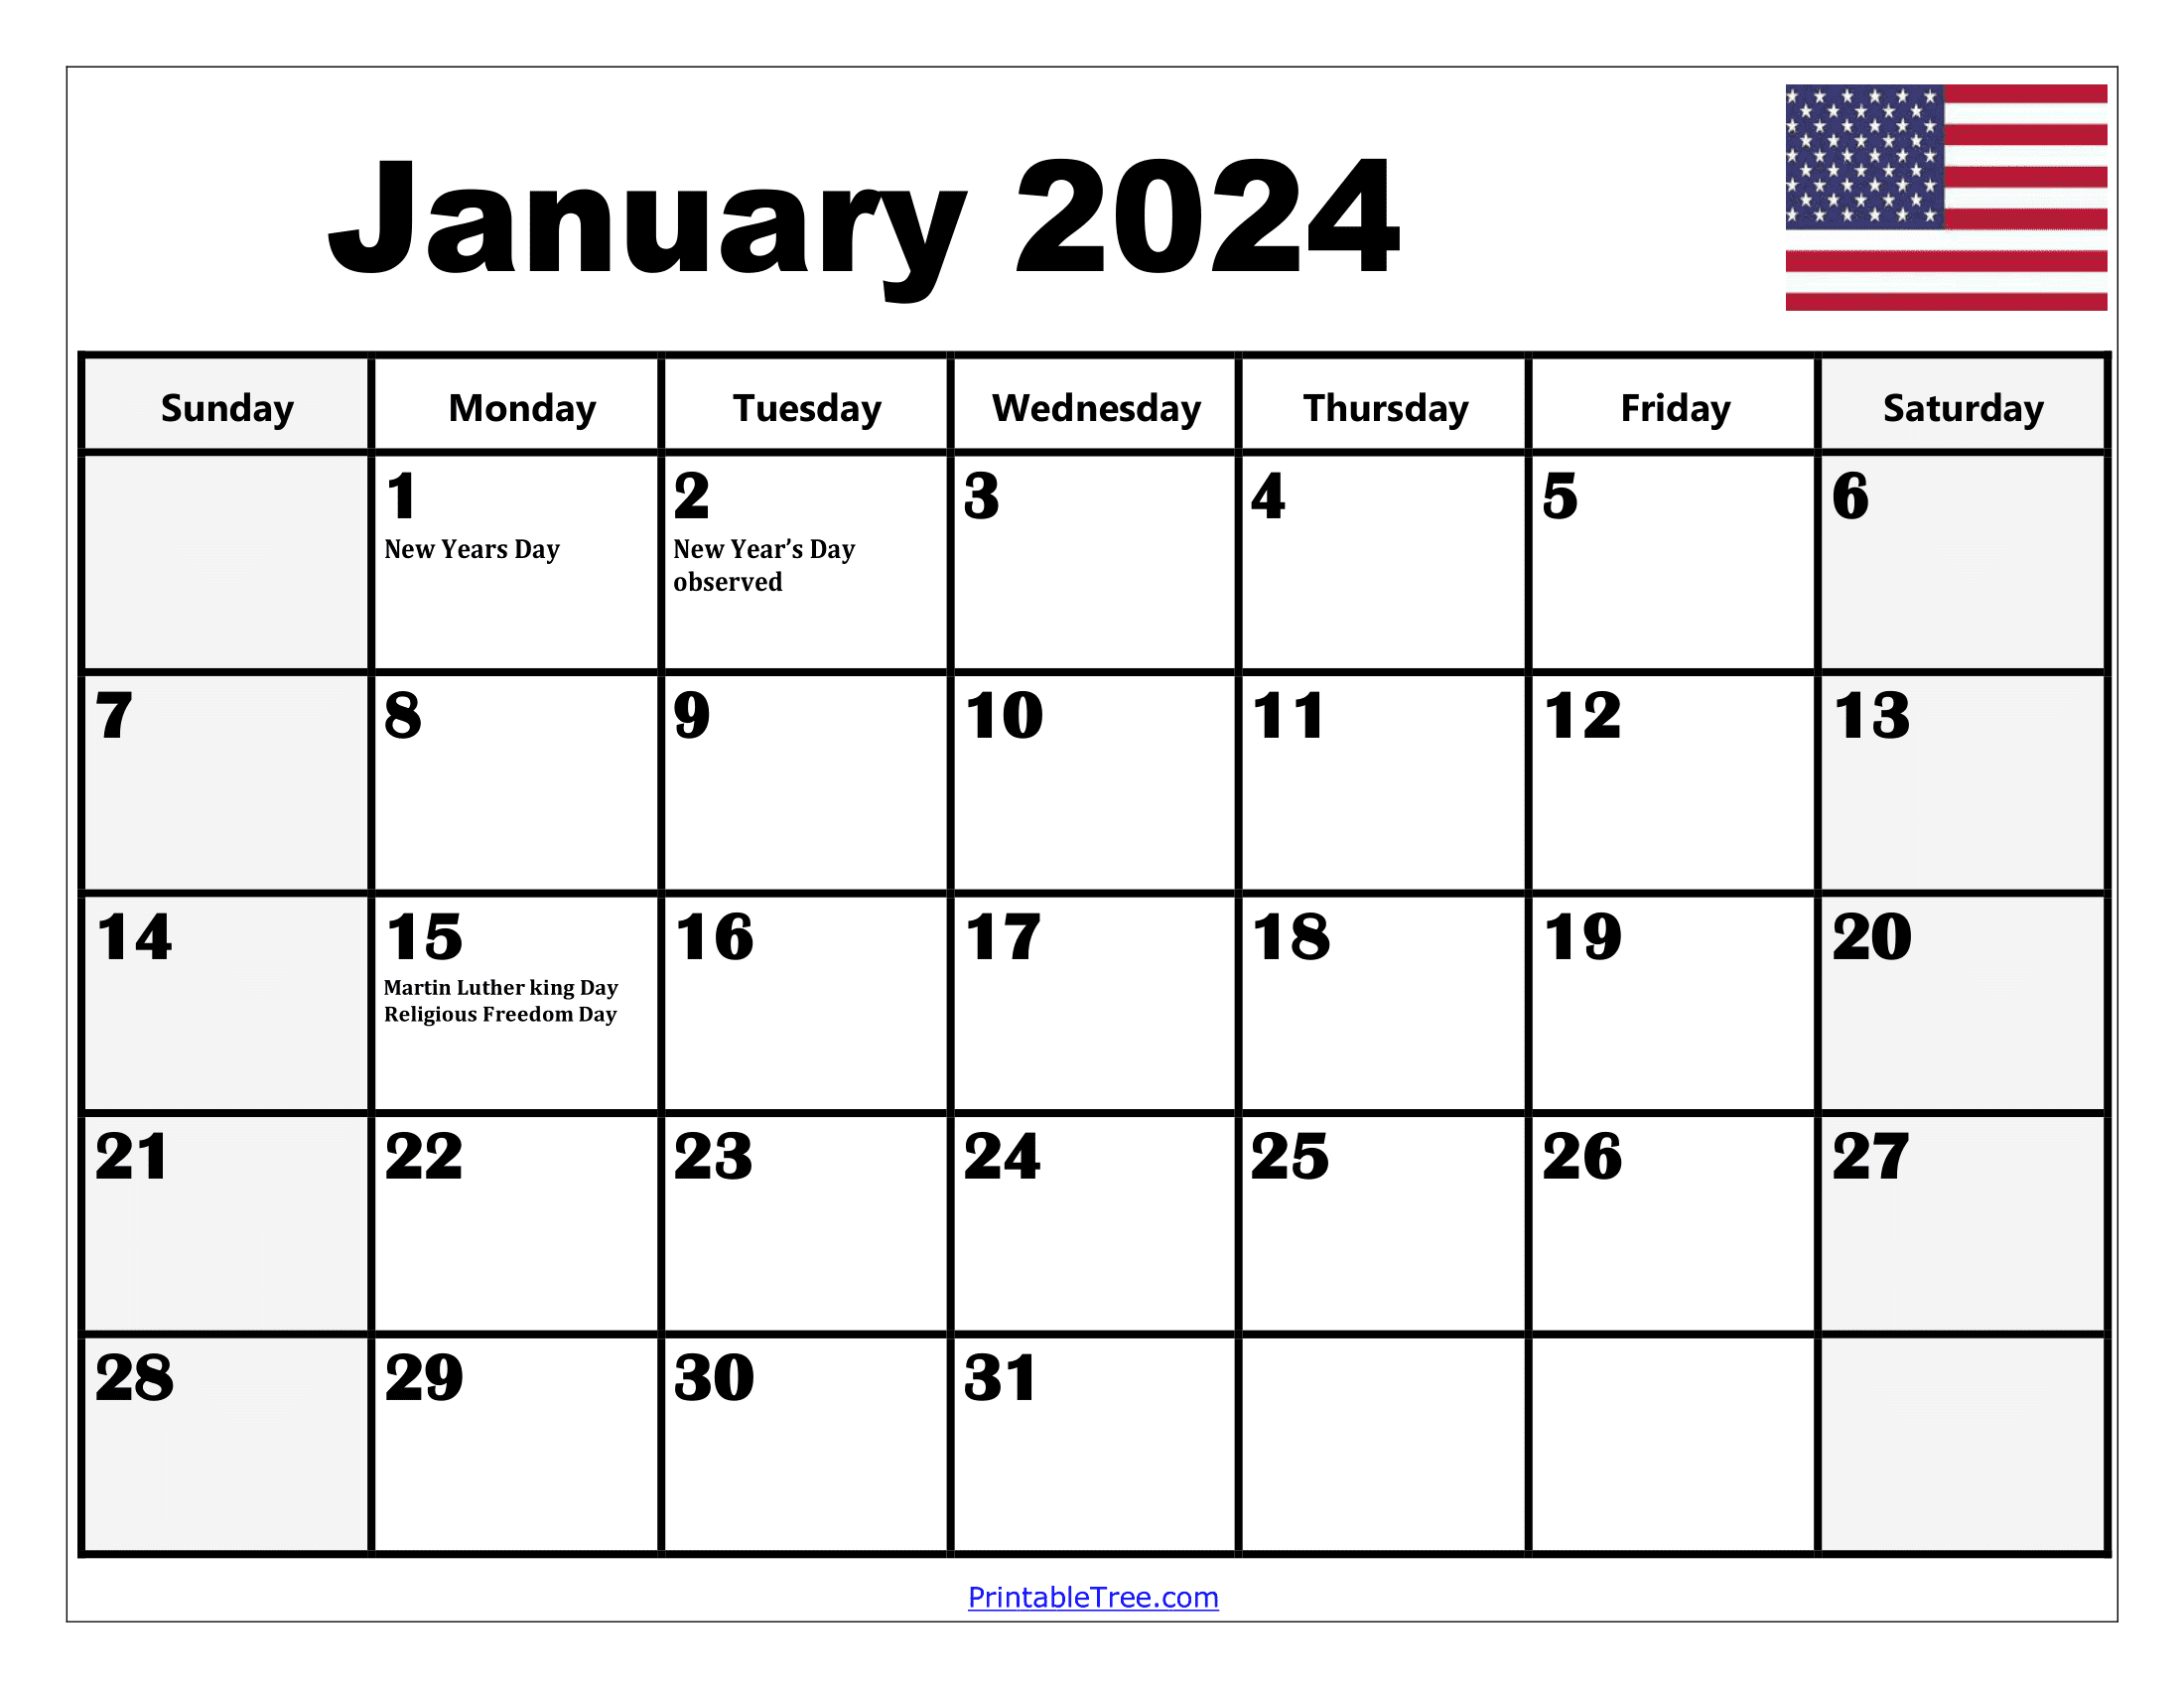 2024 Holiday Calendar Days Free Download Nov 2024 Calendar - Free Printable 2024 Calendar With Holidays Monthly Vertical